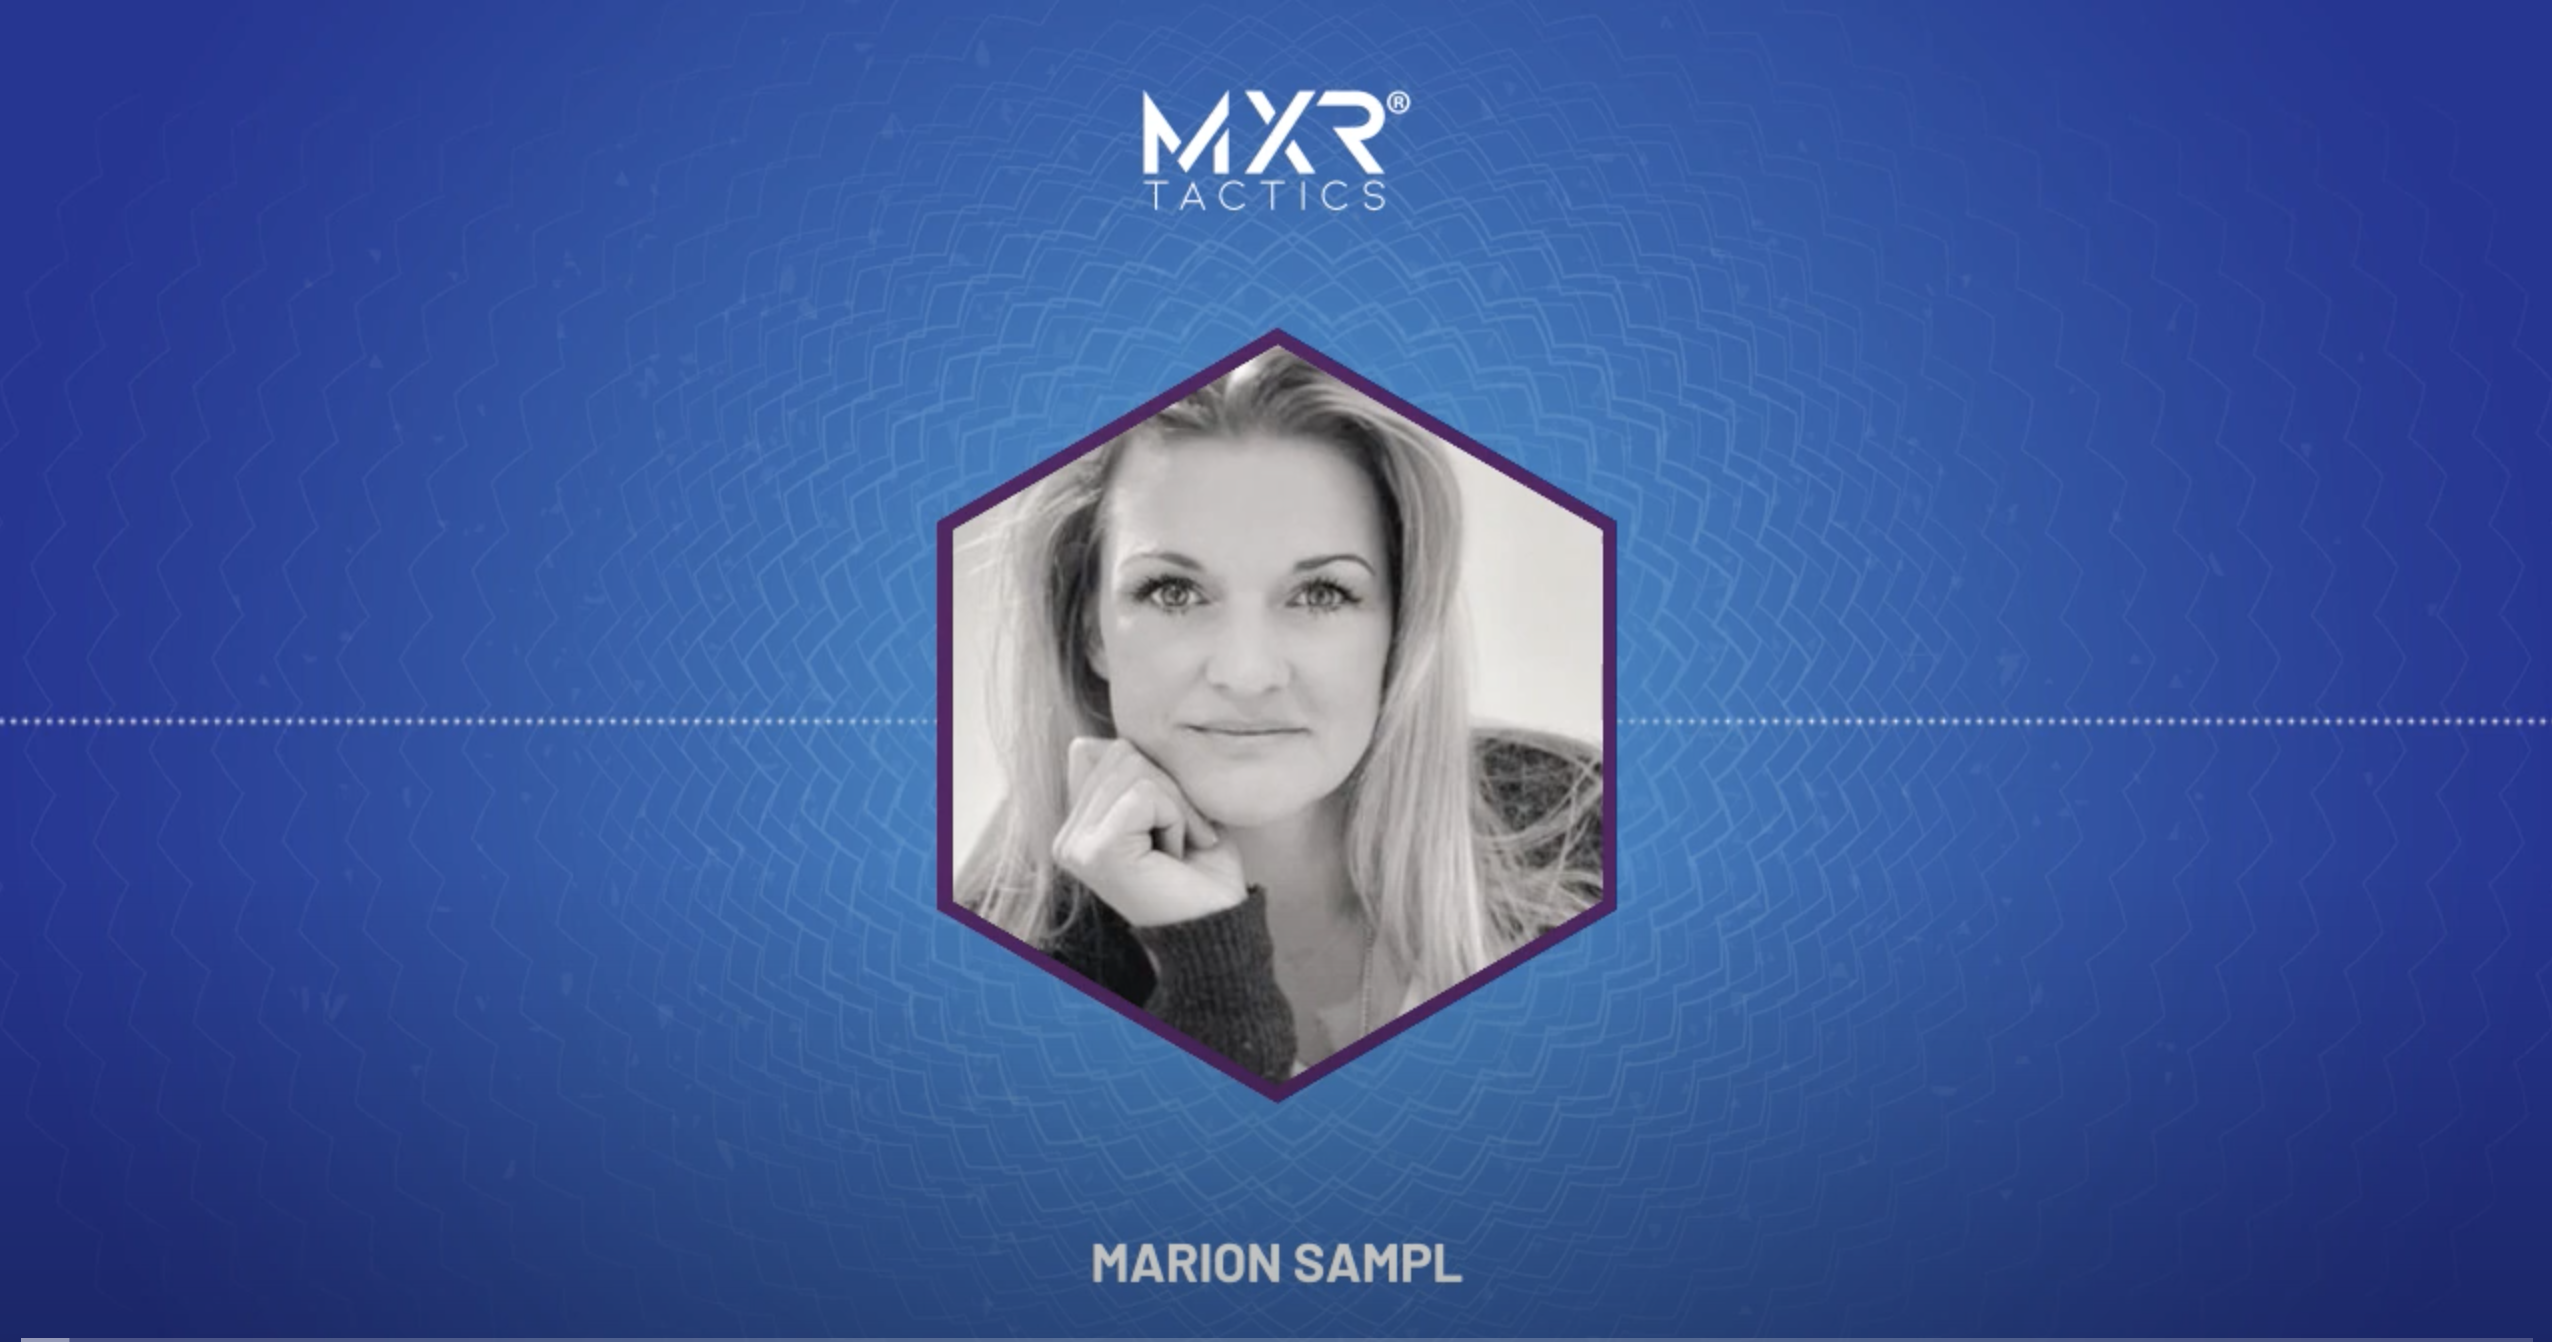 Marion Sampl